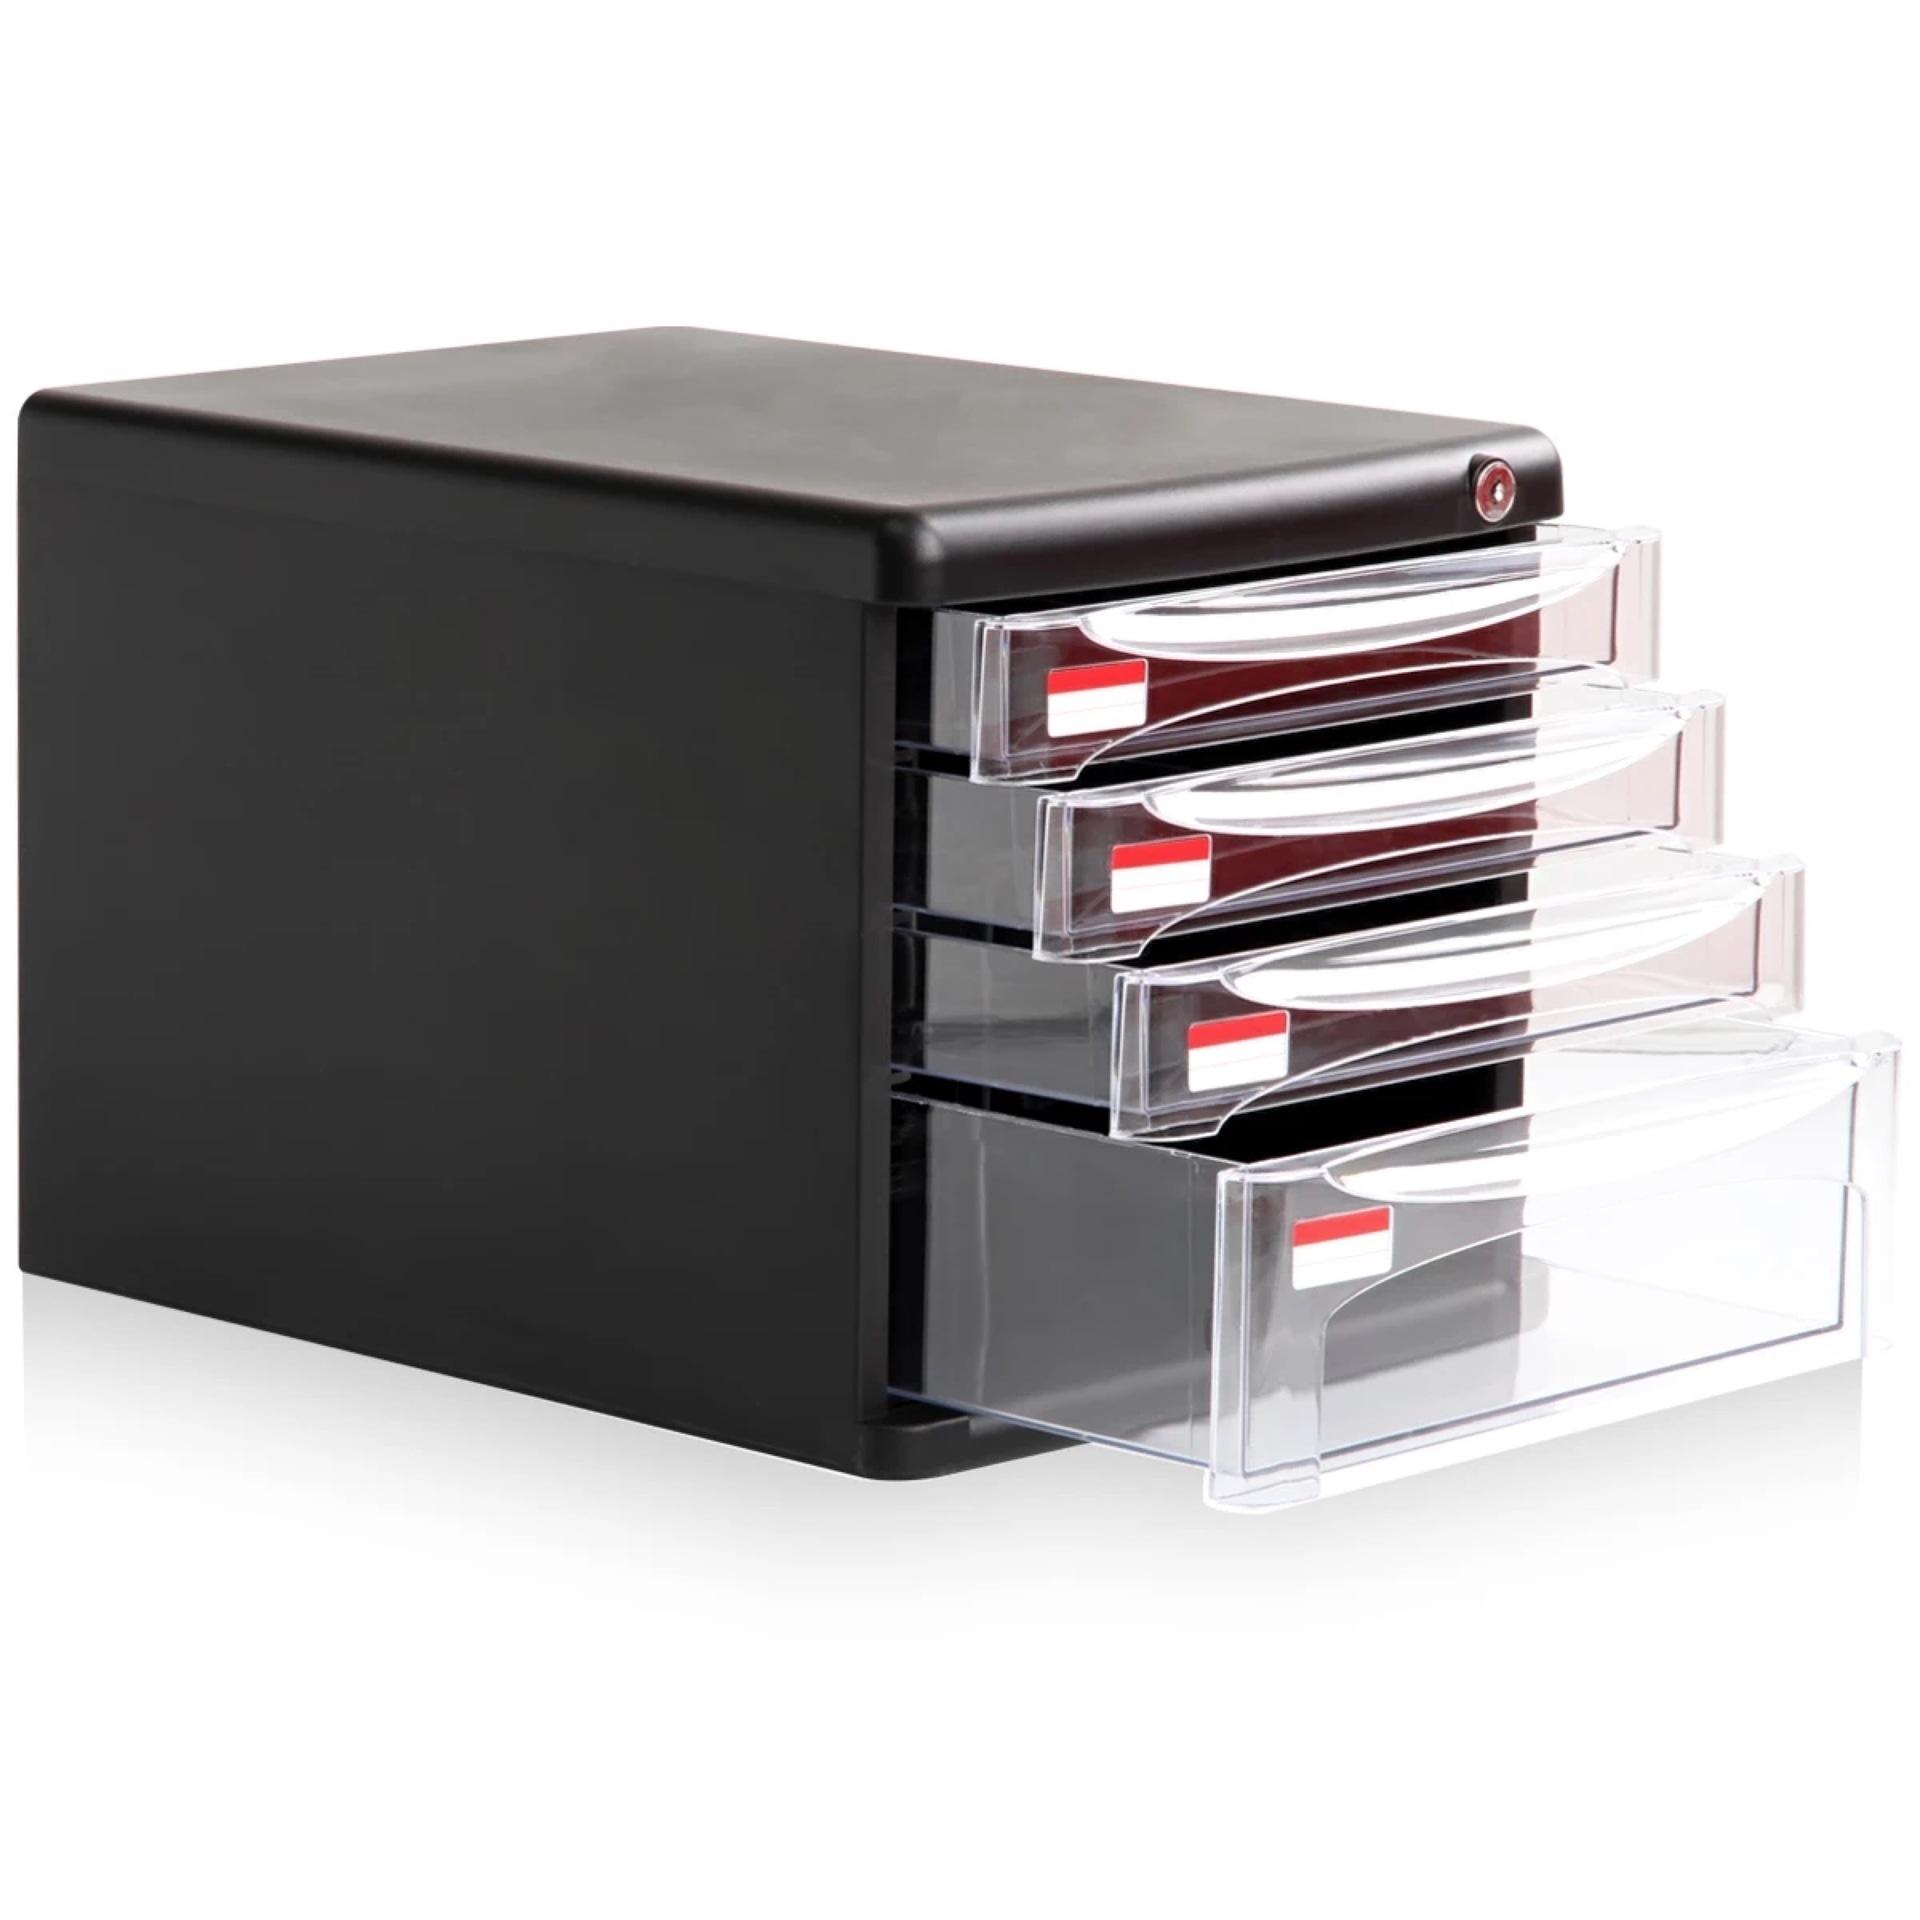 Effective File Cabinet Desktop Data Storage Cabinet Plastic Drawer